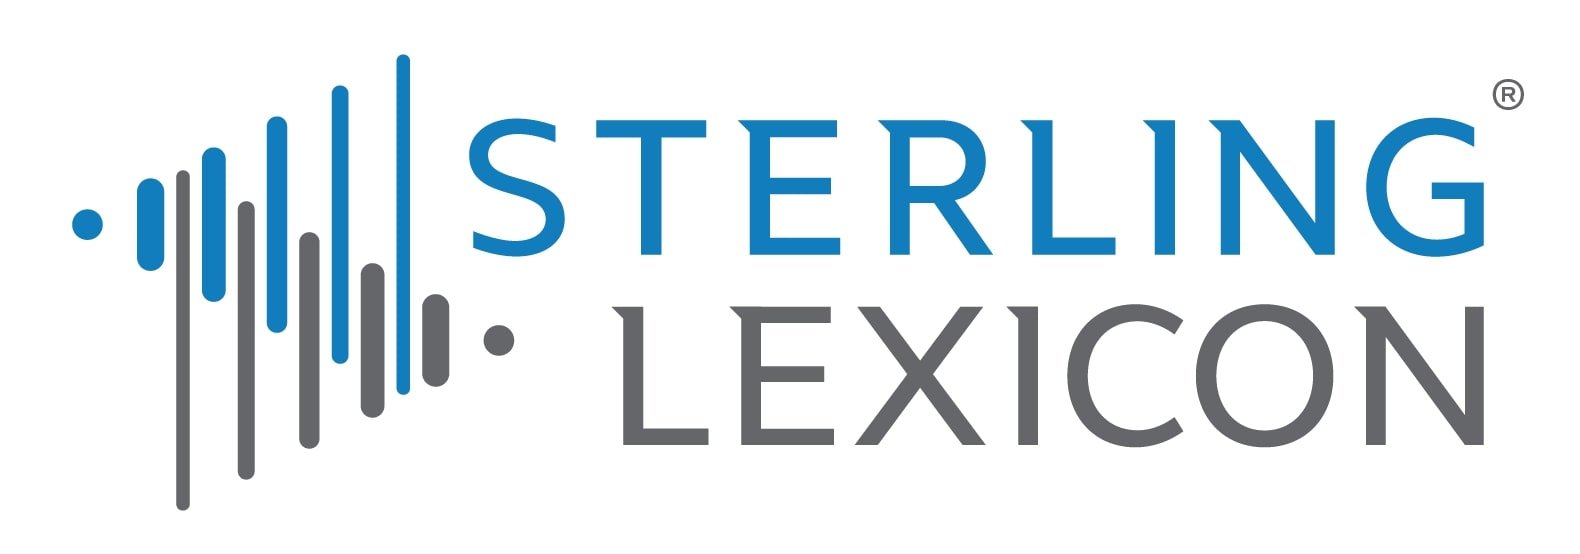 Sterling Lexicon Logo Registered final 150ppi cmyk.jpg